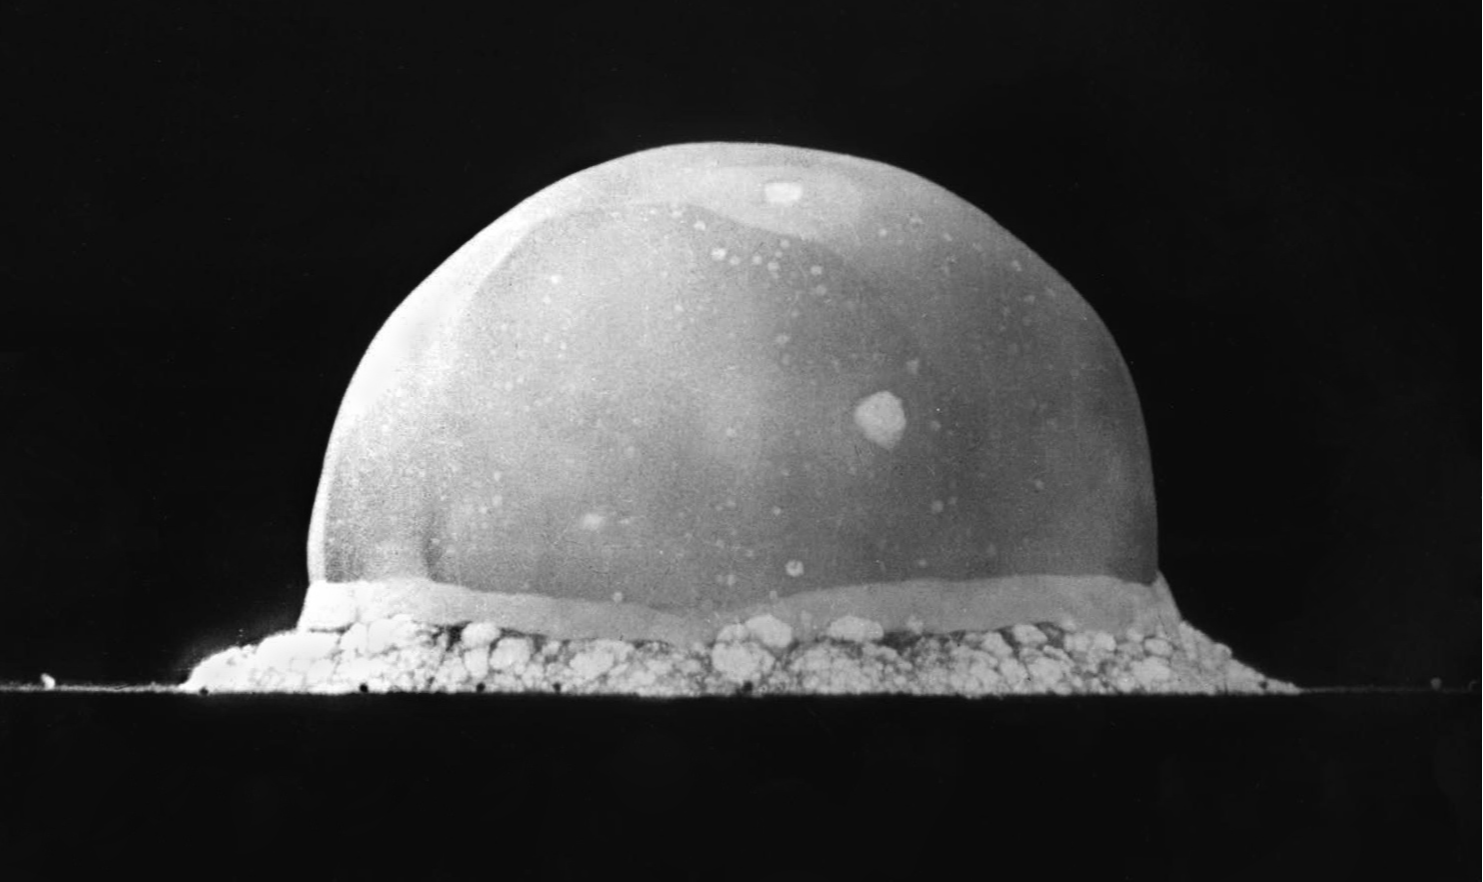 Esta primeira, denominada 'Gadget', utilizou o plutônio, elemento químico radioativo, explosivo termonuclear, como aquela que seria lançada em Nagasaki